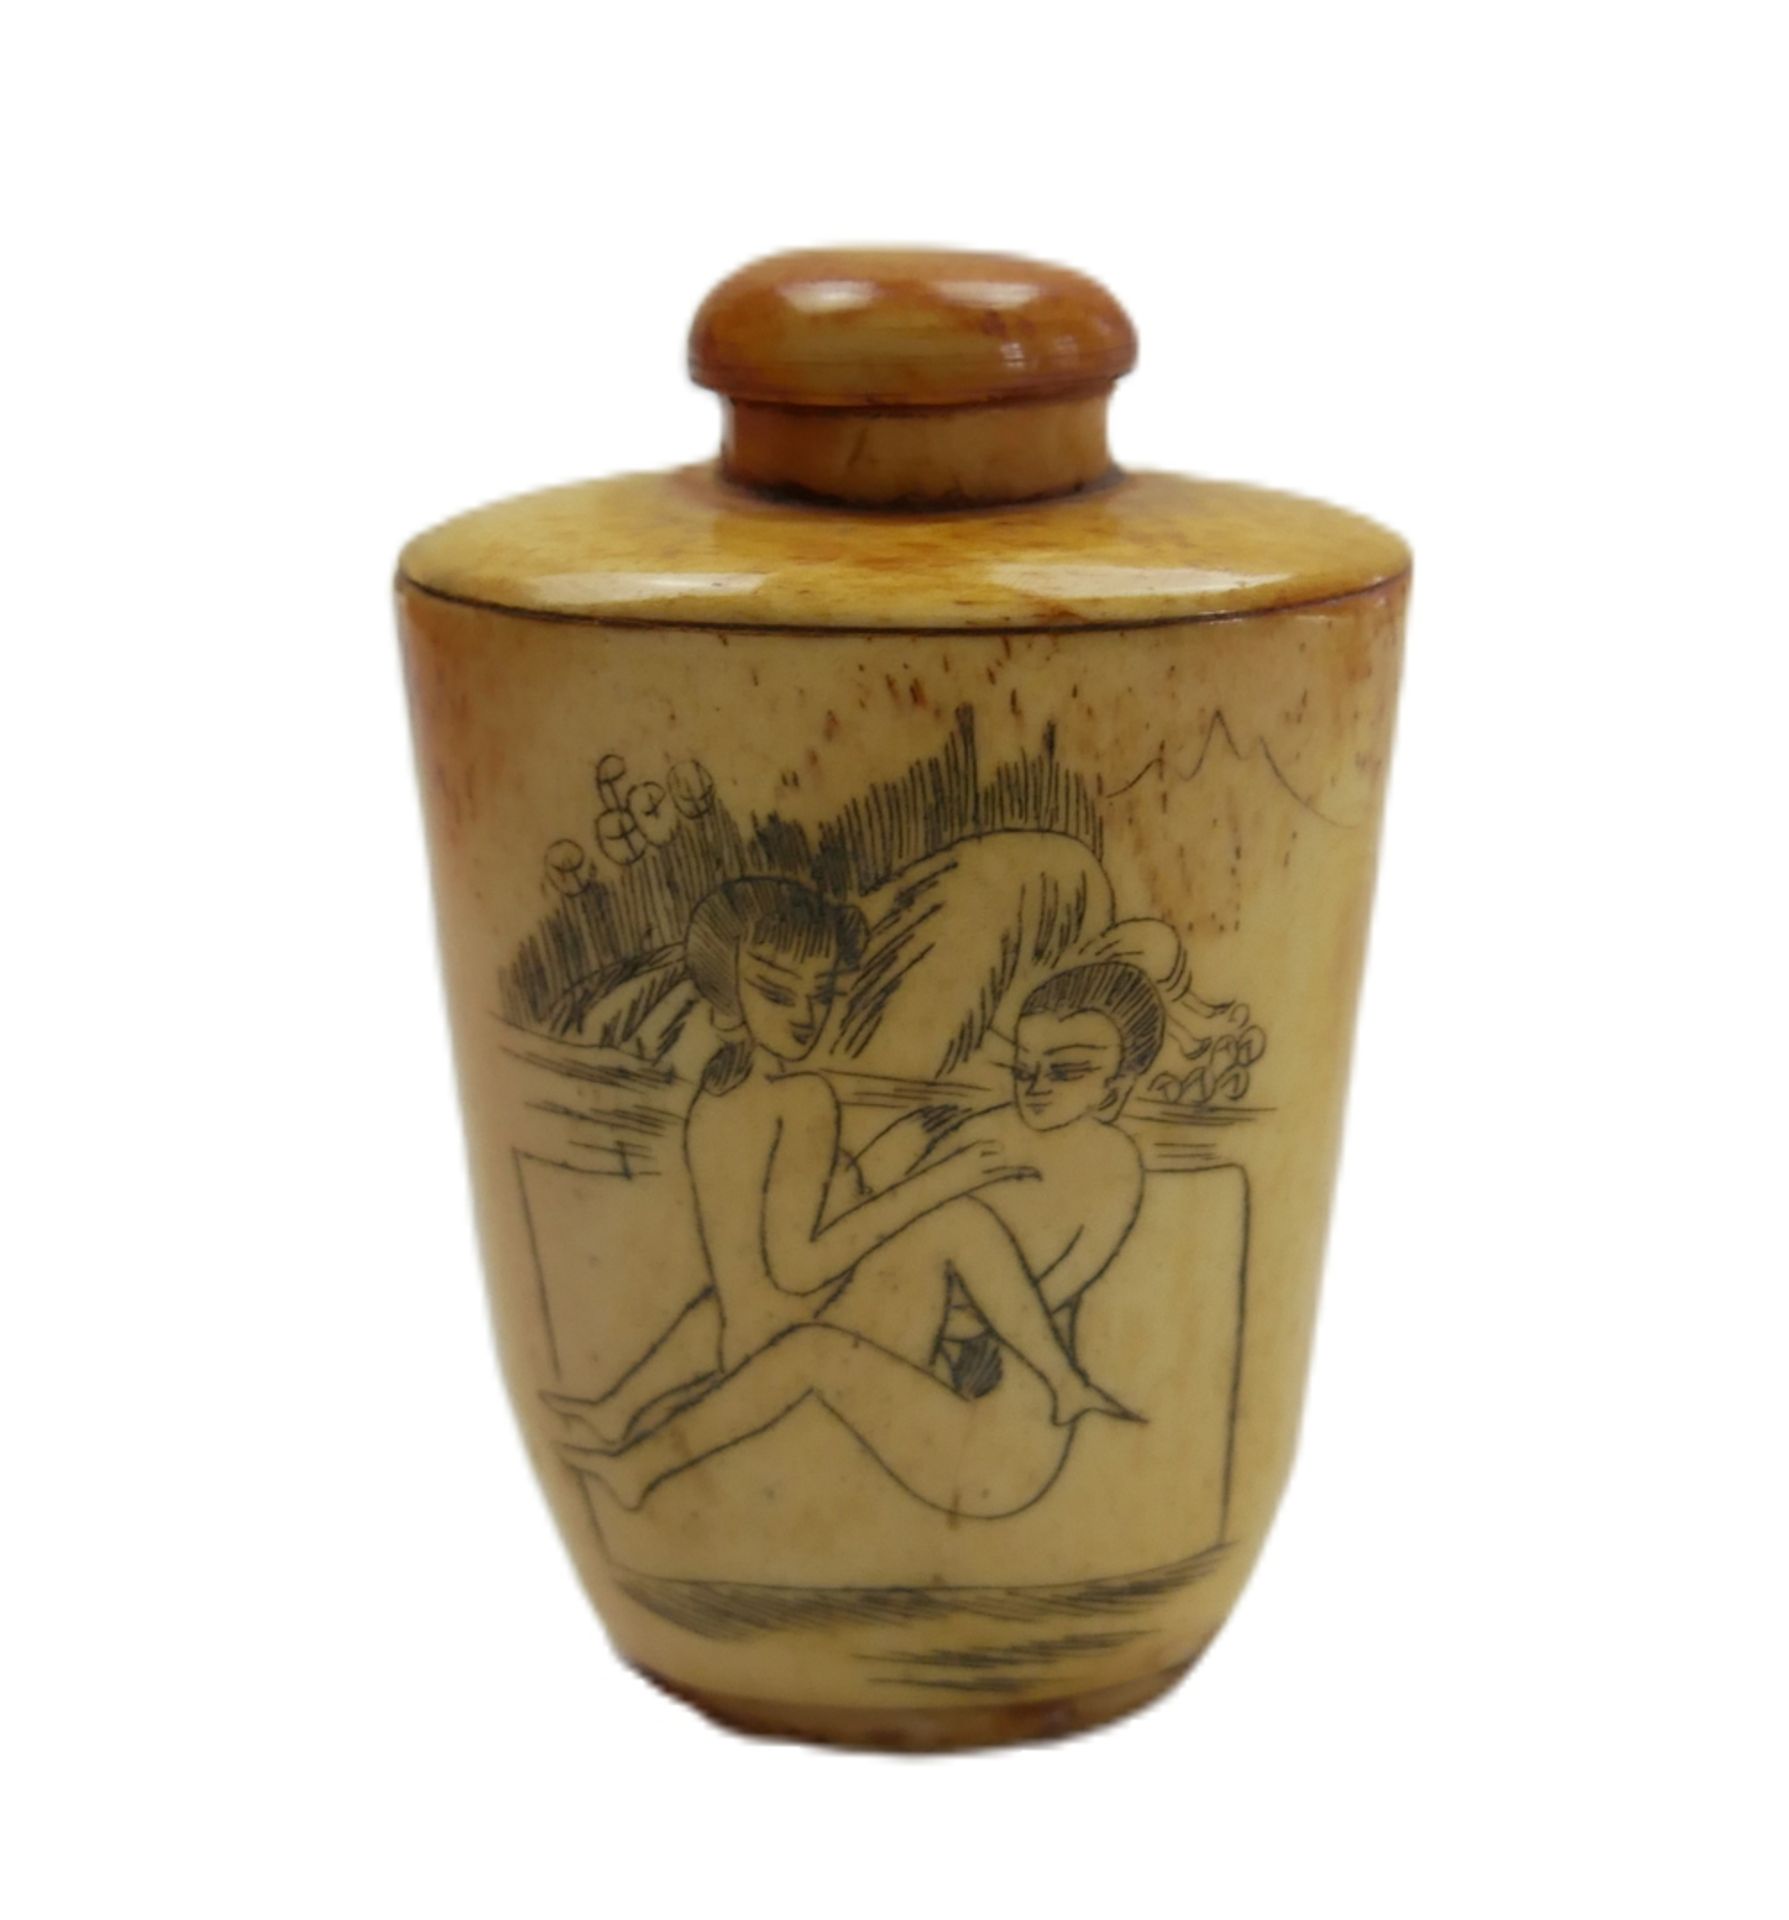 Snuff-Bottle / Riechfläschchen China, um 1900. Beidseitig mit Erotischen Motiven. Höhe ca. 7 cm